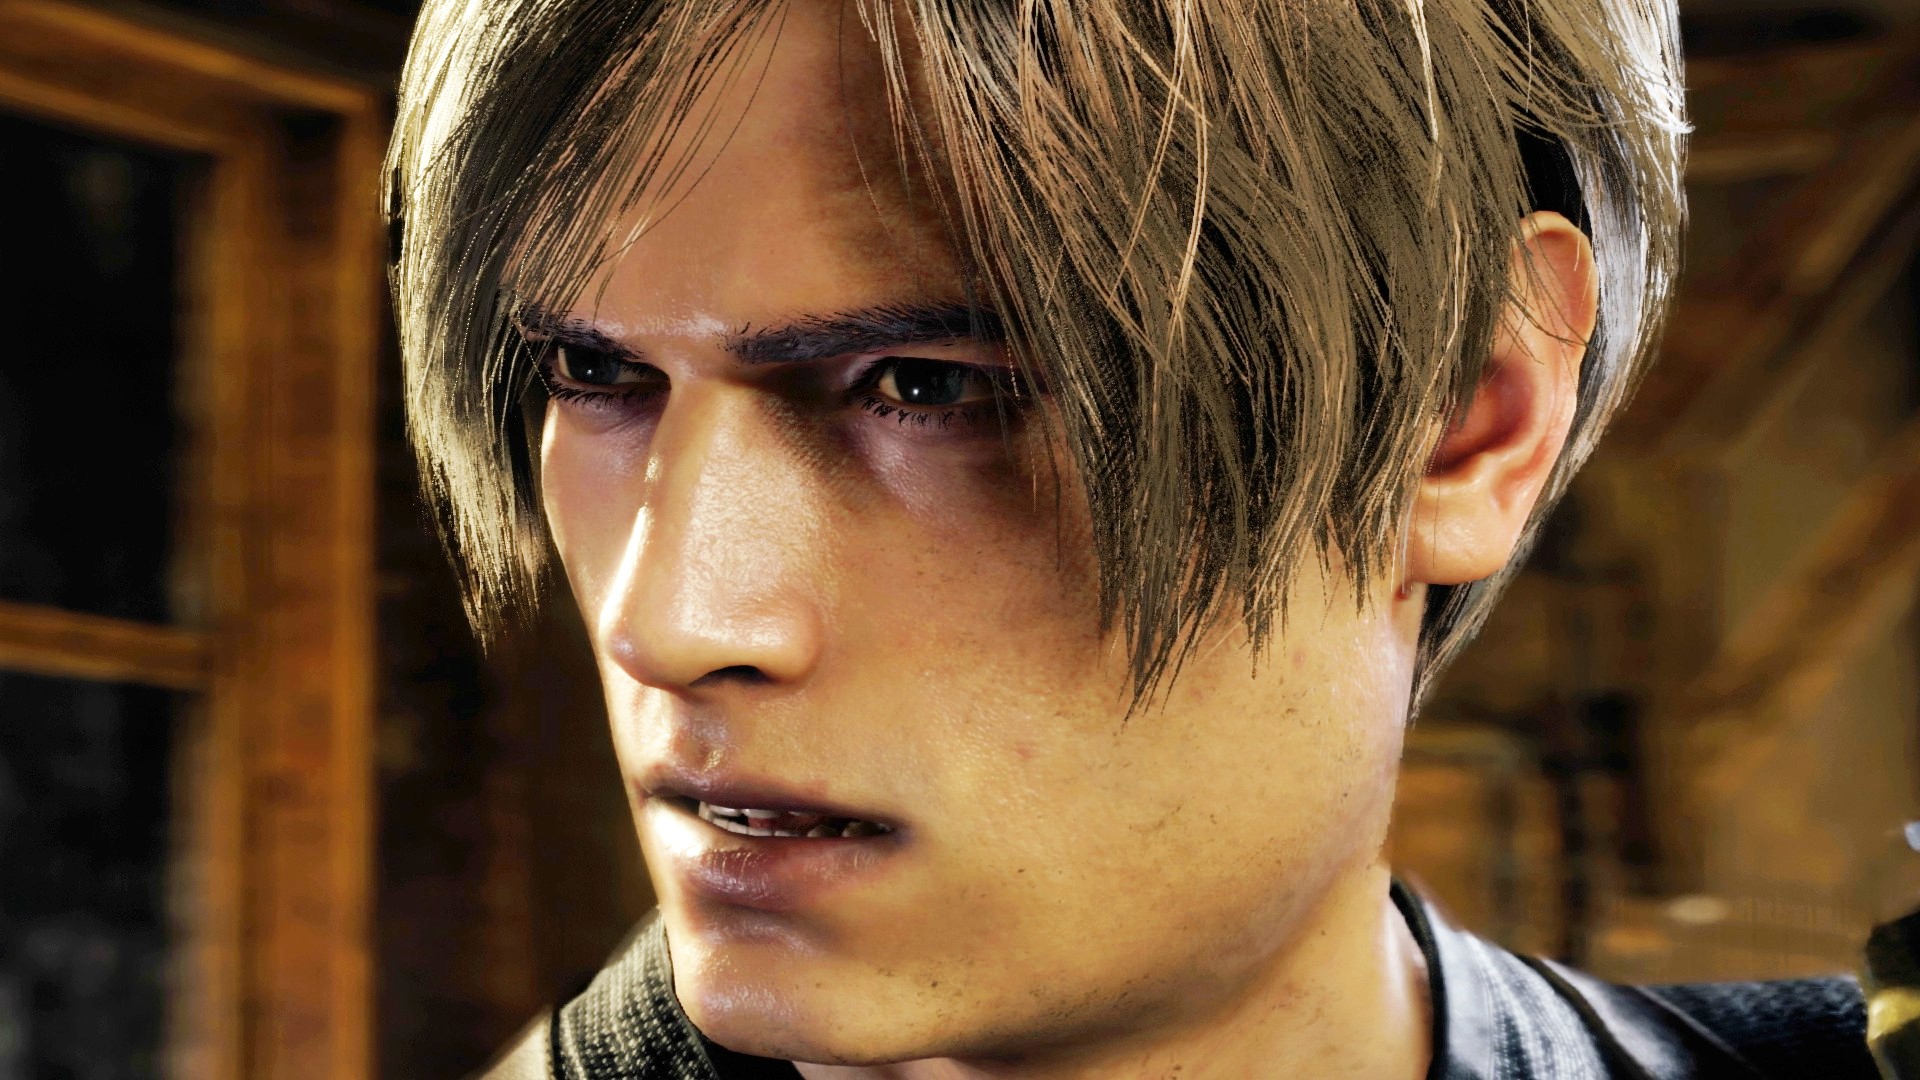 Buy Resident Evil 4 Remake, PC - Steam